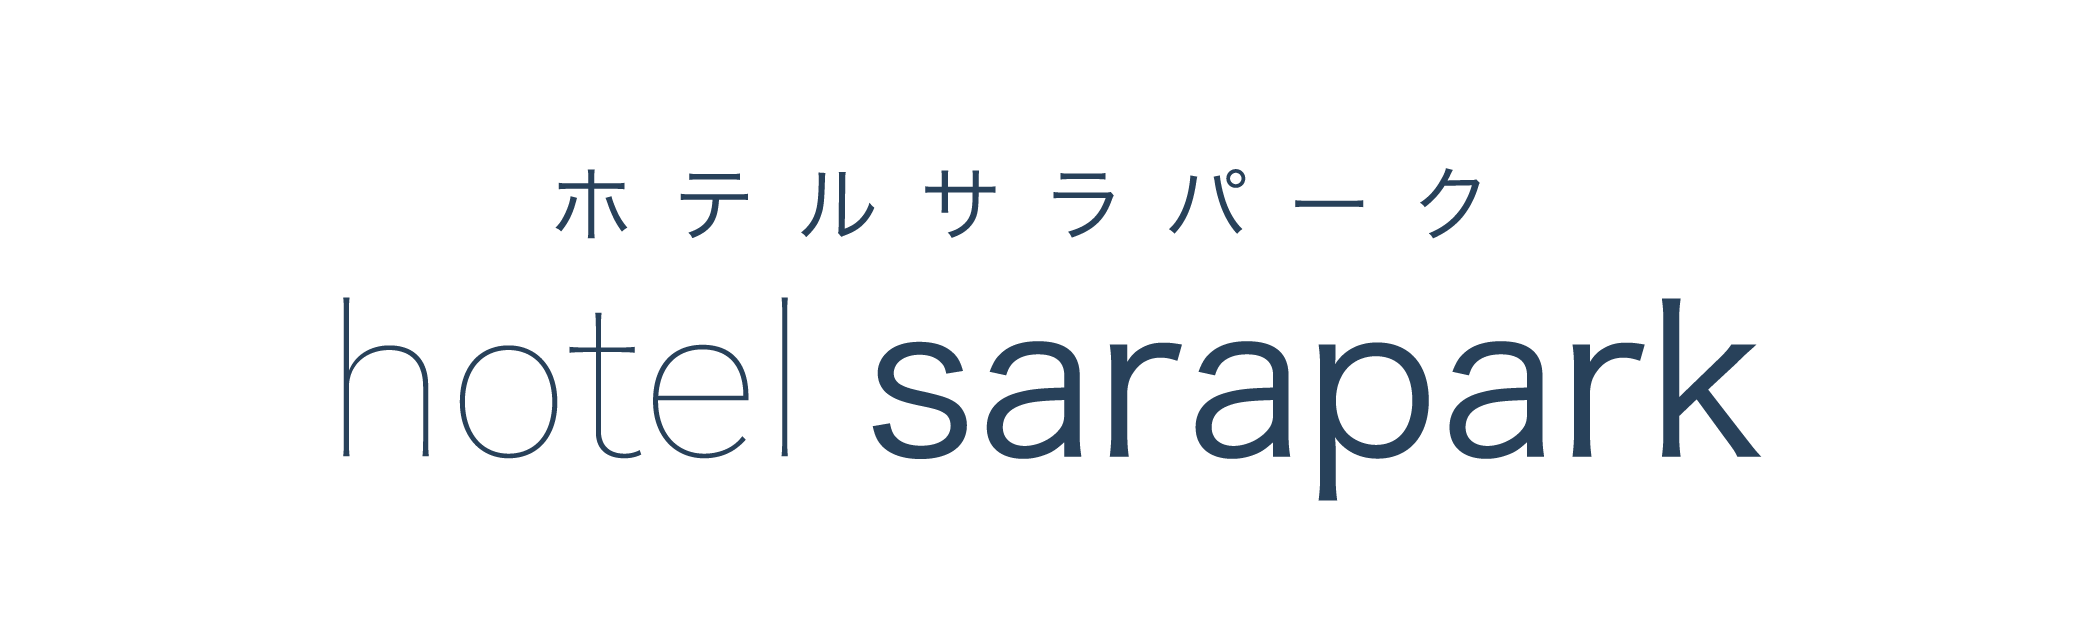 sarapark（ホテル）